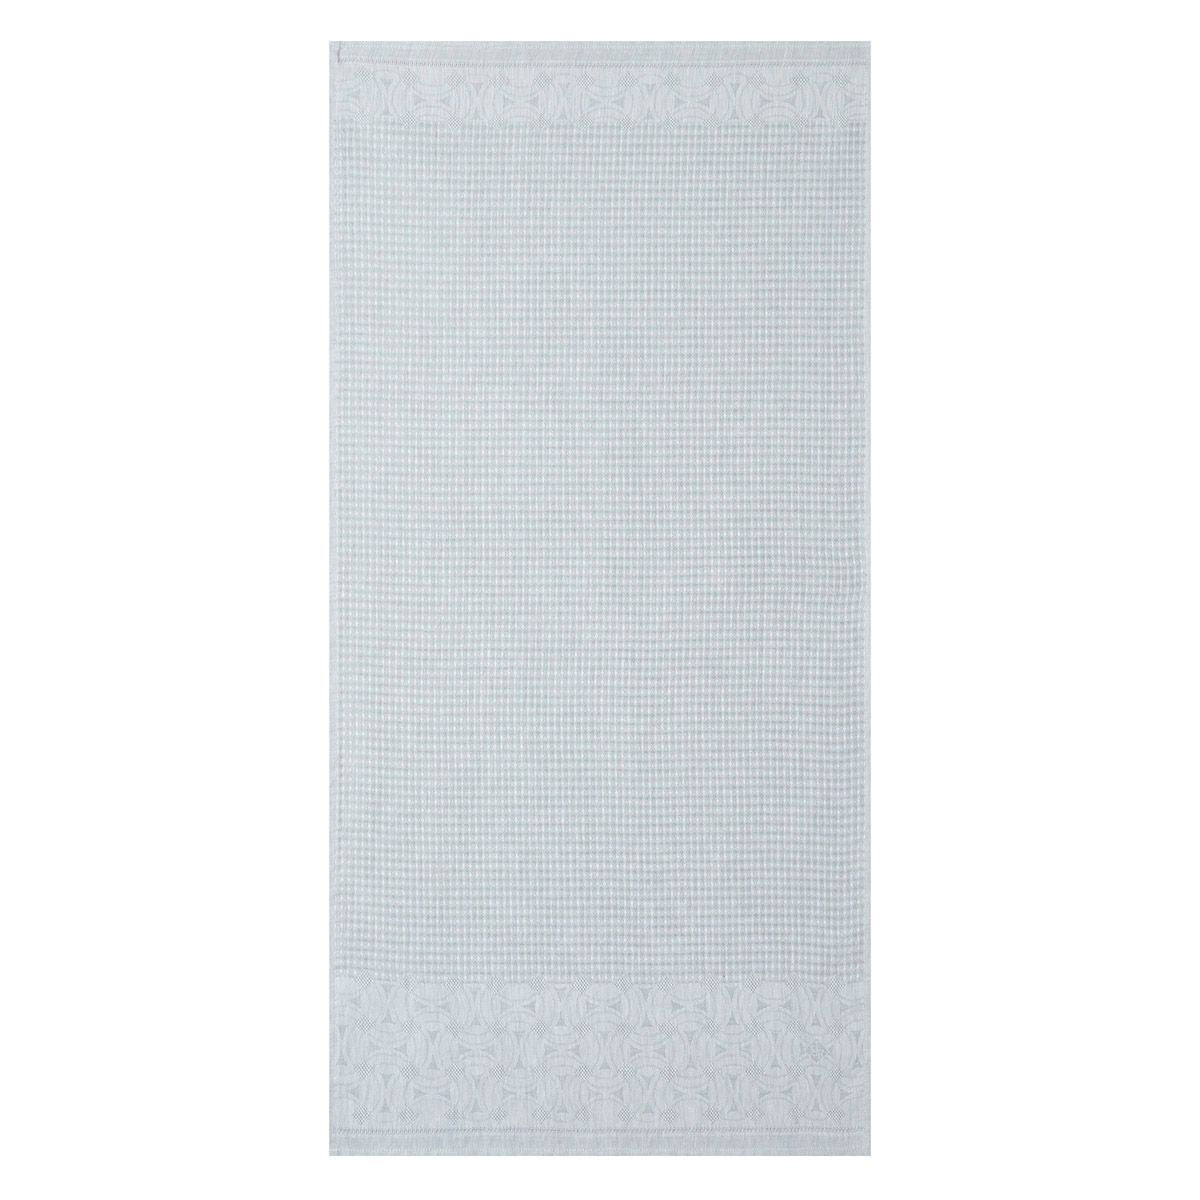 Lula Pearl Linen Bath Towel Collection by Le Jacquard Français | Fig Linens